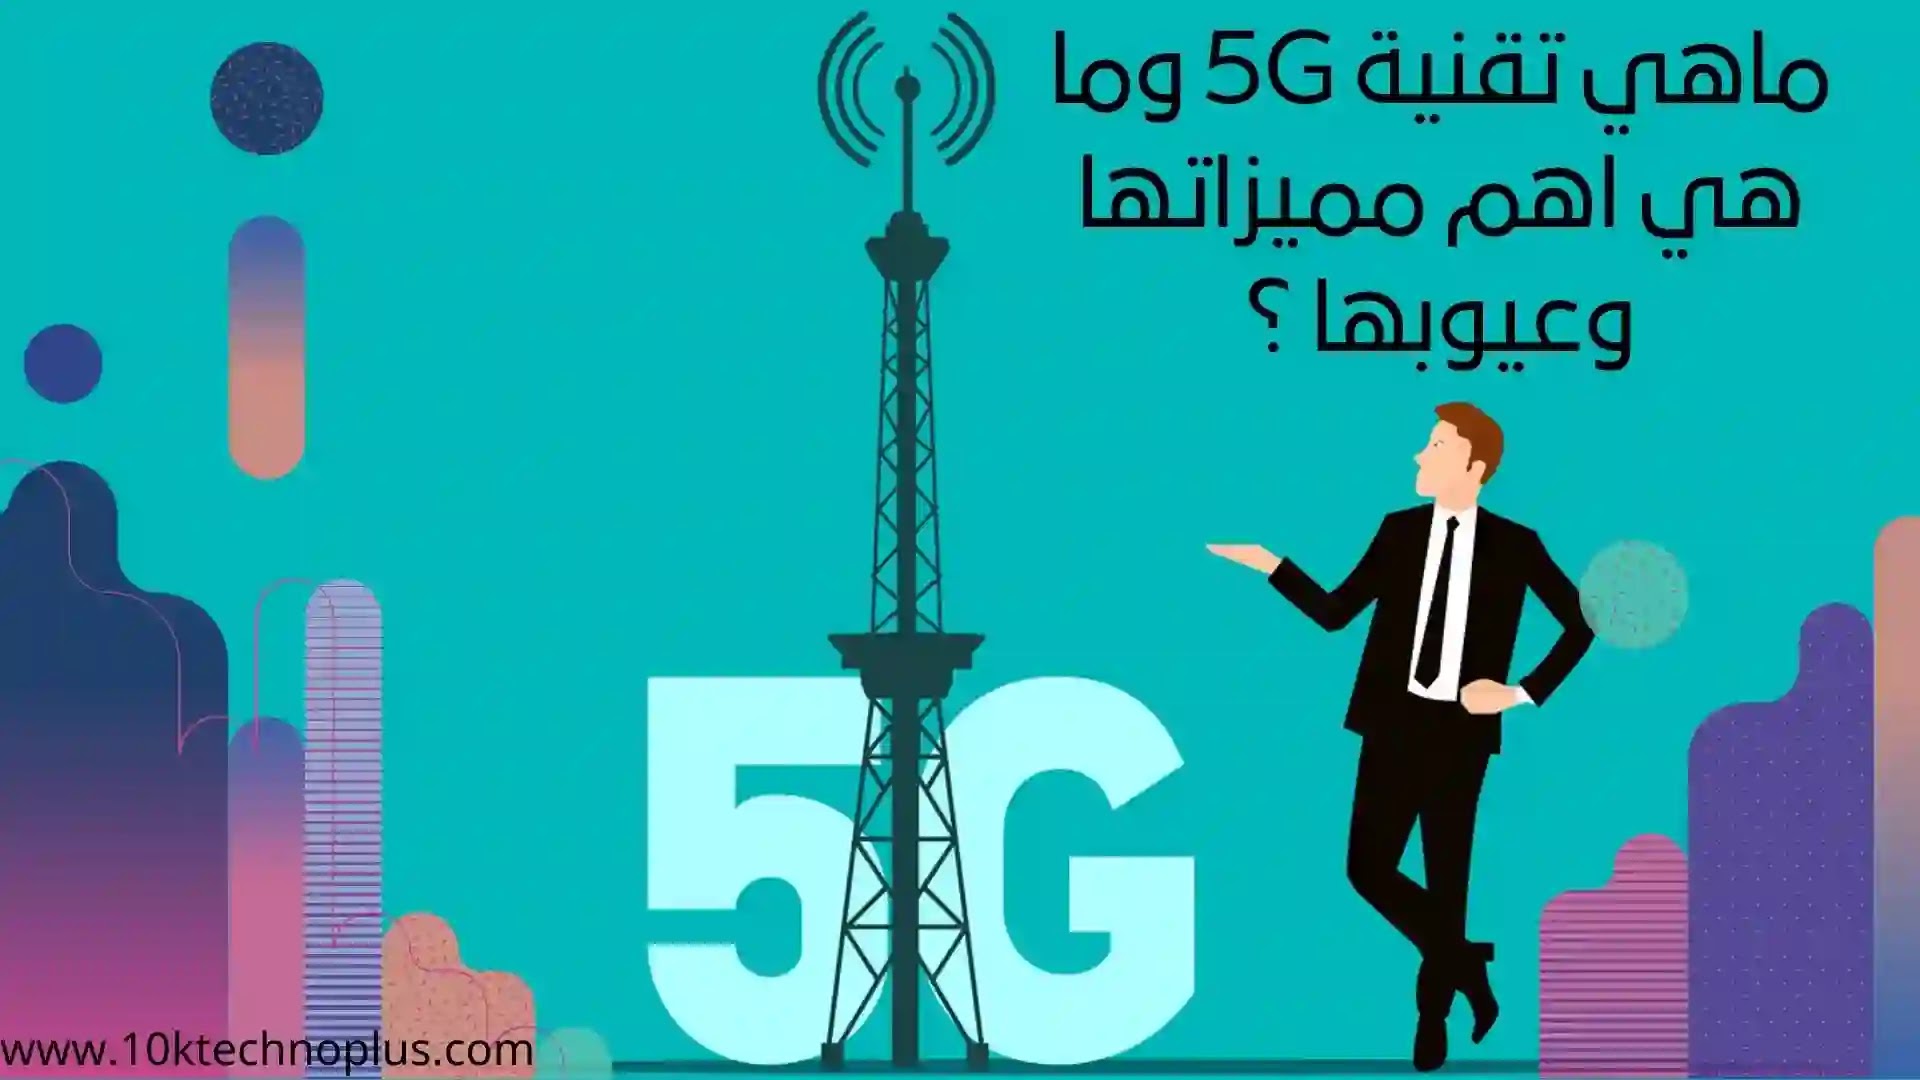 ماهي تقنية 5G وما هي اهم مميزاتها وعيوبها ؟